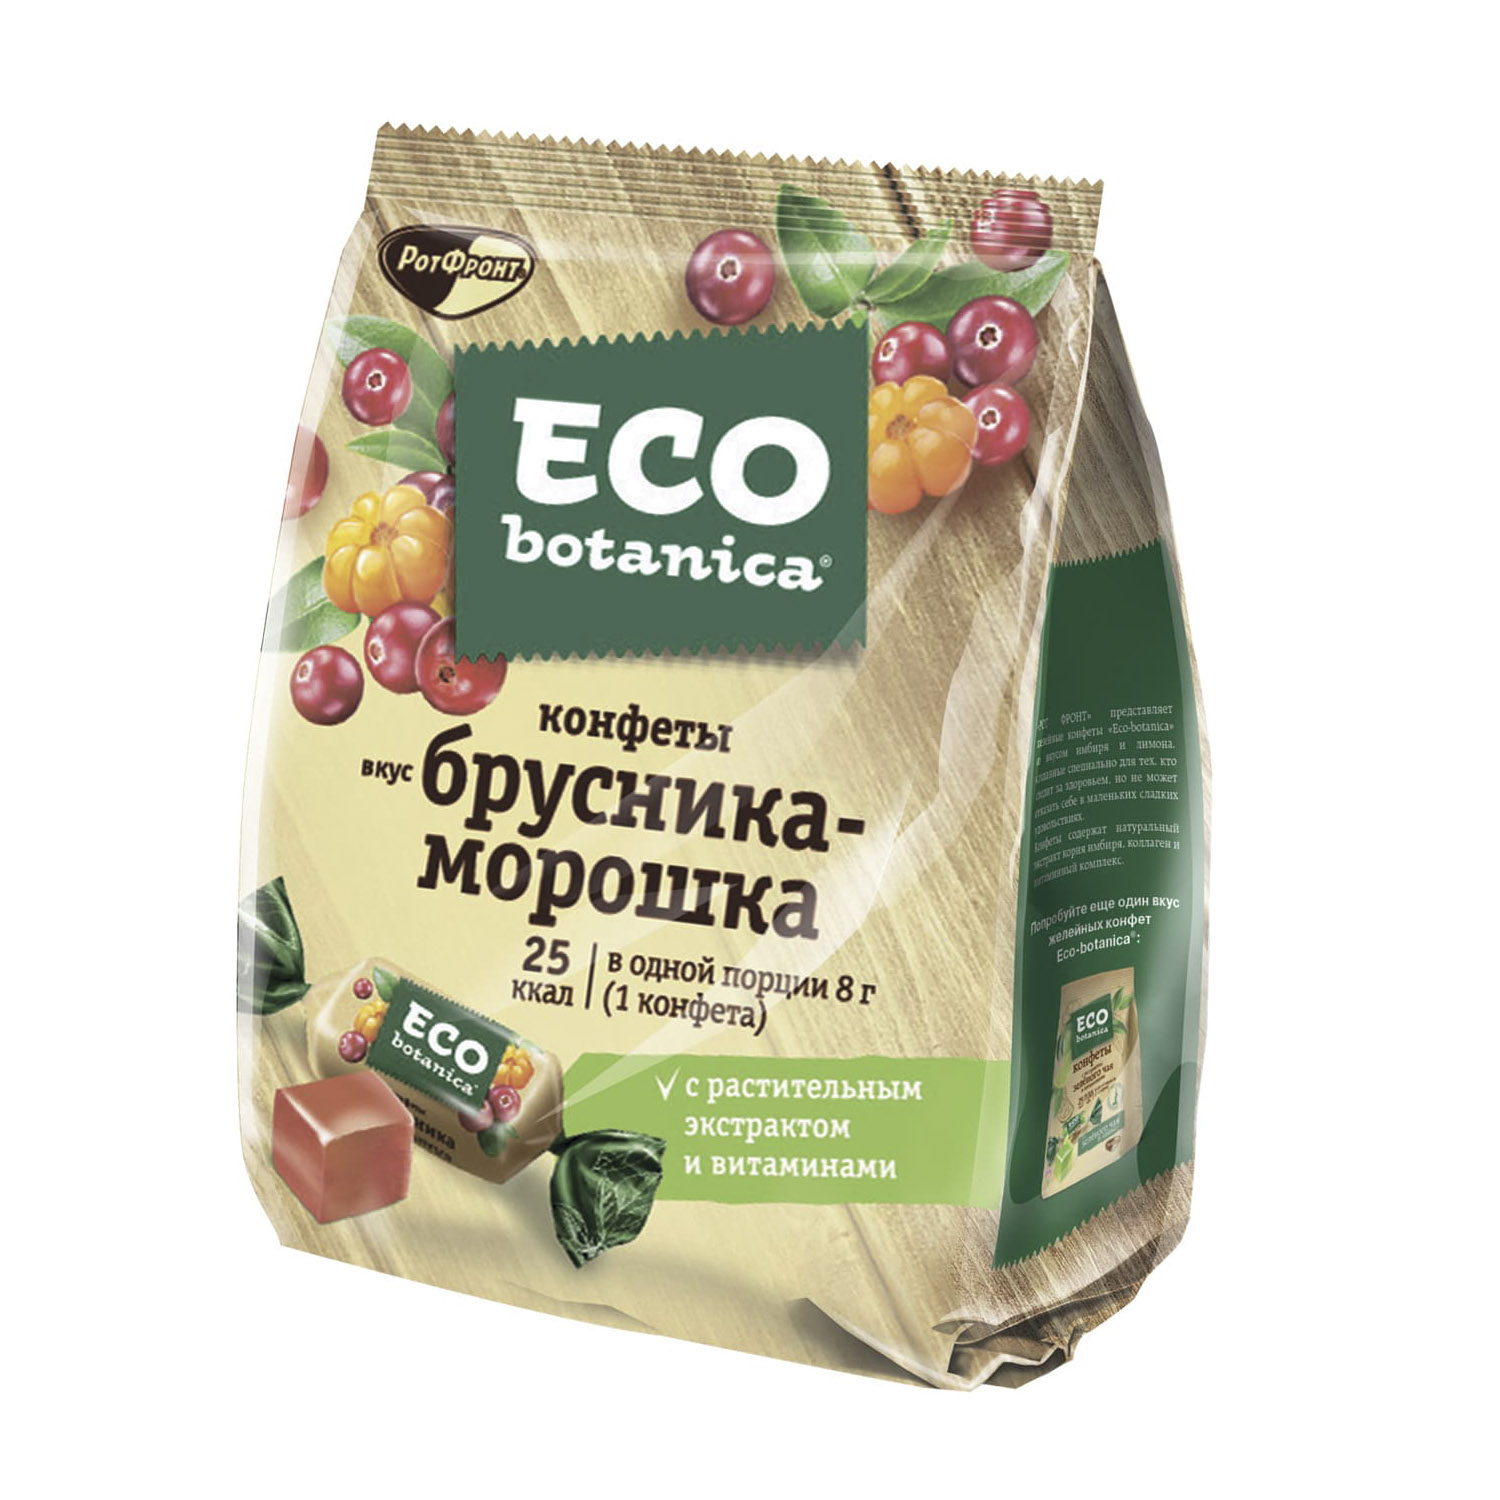 Конфеты Eco Botanica со вкусом Брусника-Морошка 200 г конфеты eco botanica со вкусом брусника морошка 200 г